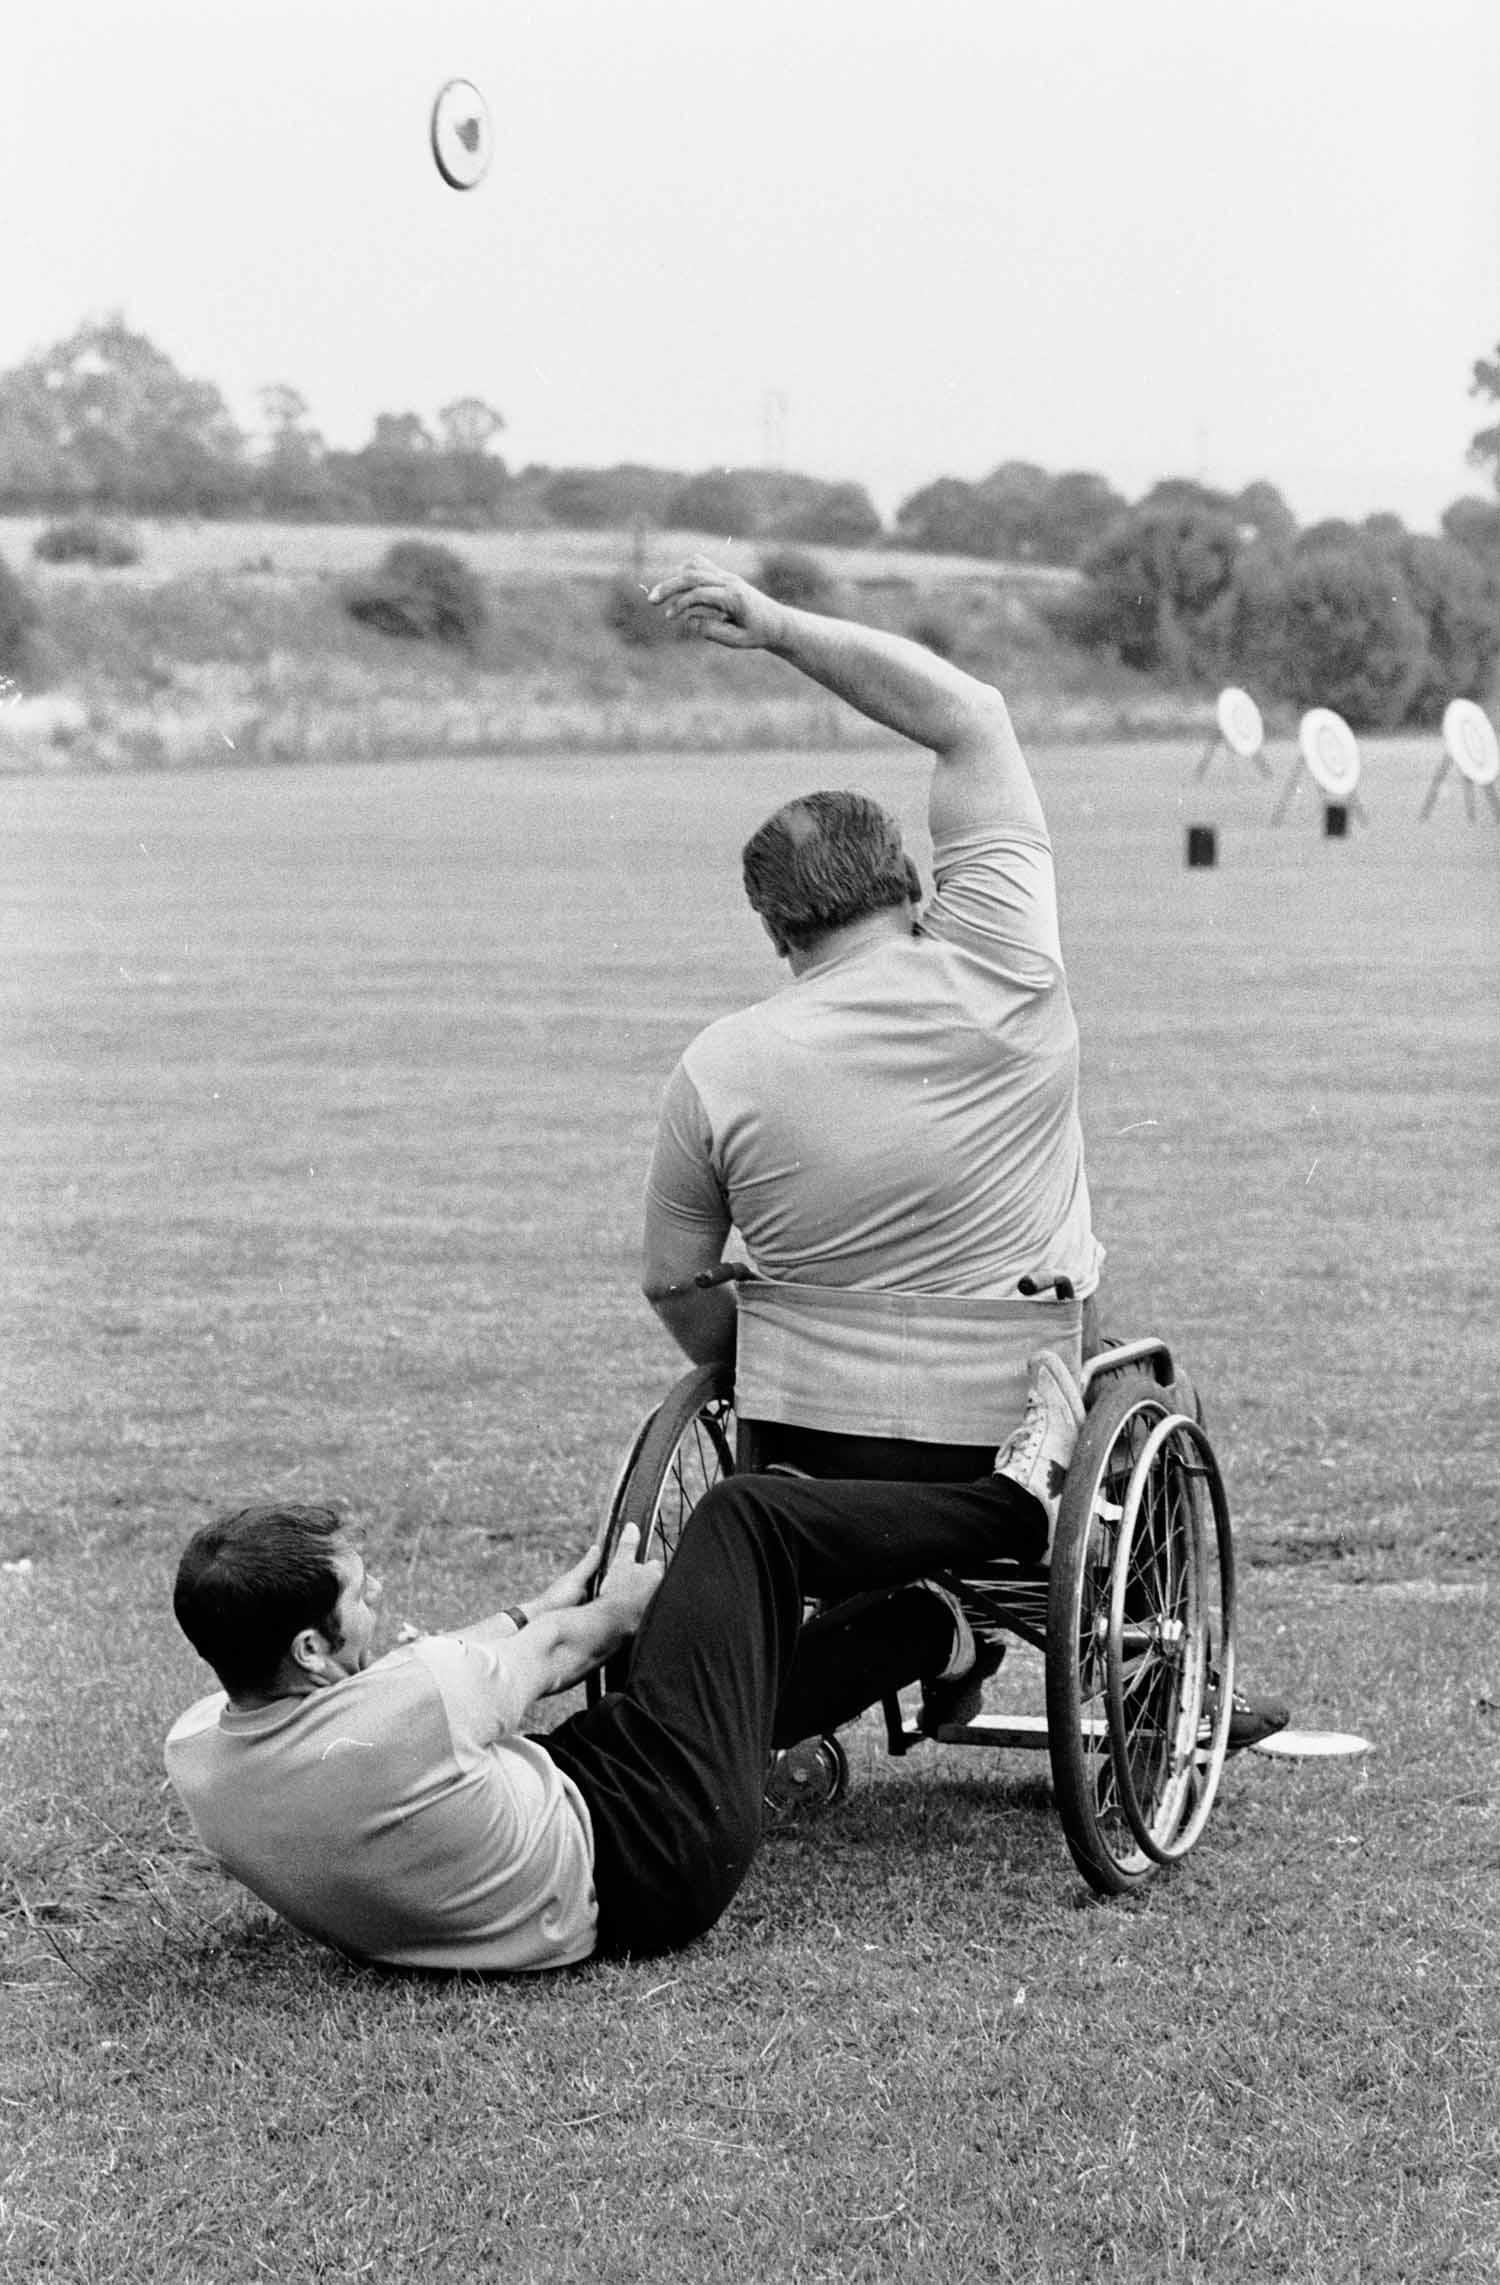 Ezek voltak az első paralimpiák legerősebb pillanatai - fotók